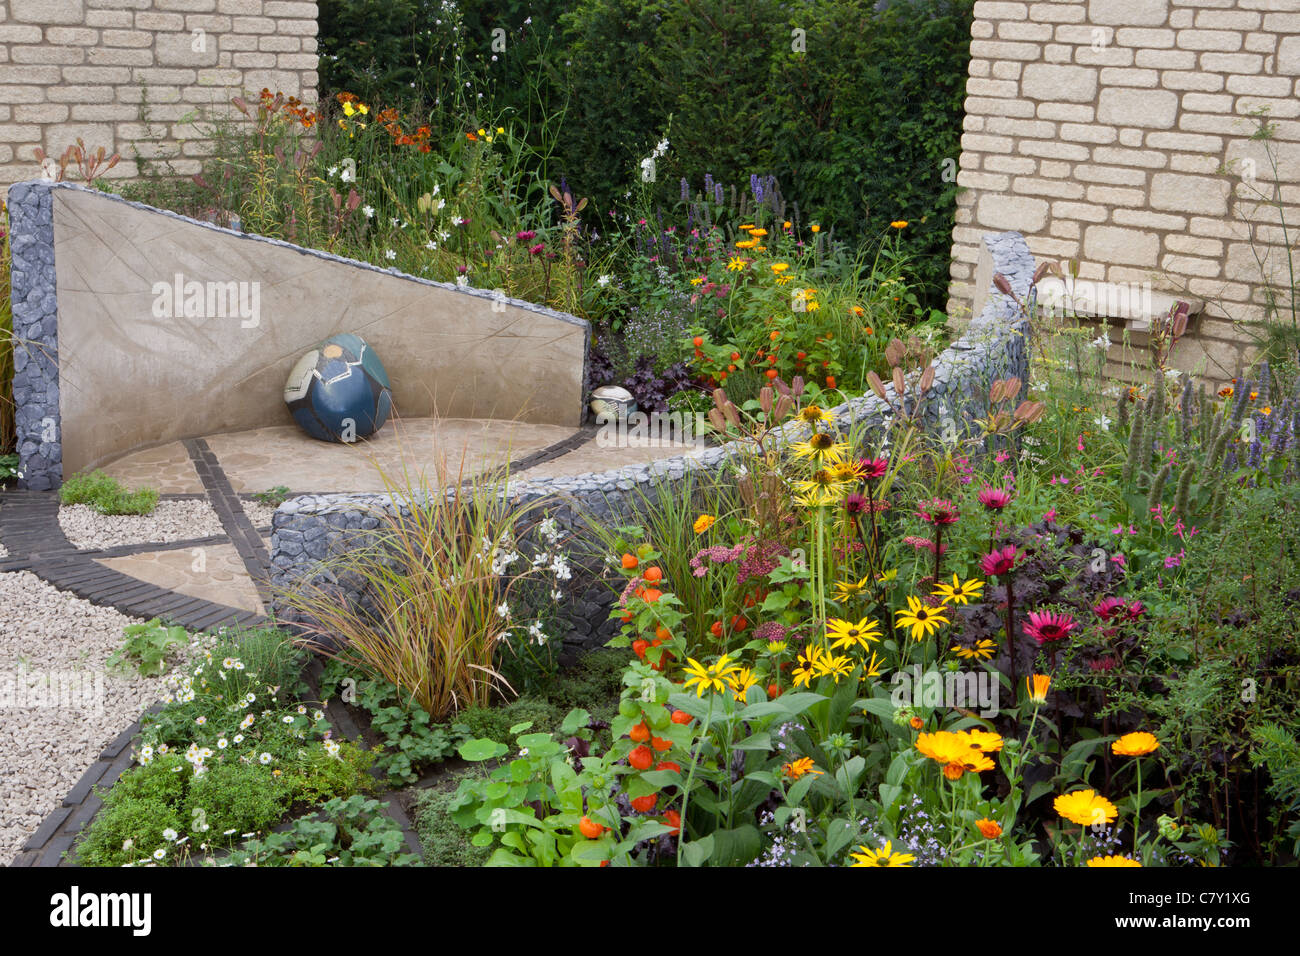 Petite cour de Cottage jardin urbain avec cercle circulaire pierre pavée et patio en gravier mixte frontière d'été limite de couverture Royaume-Uni Banque D'Images